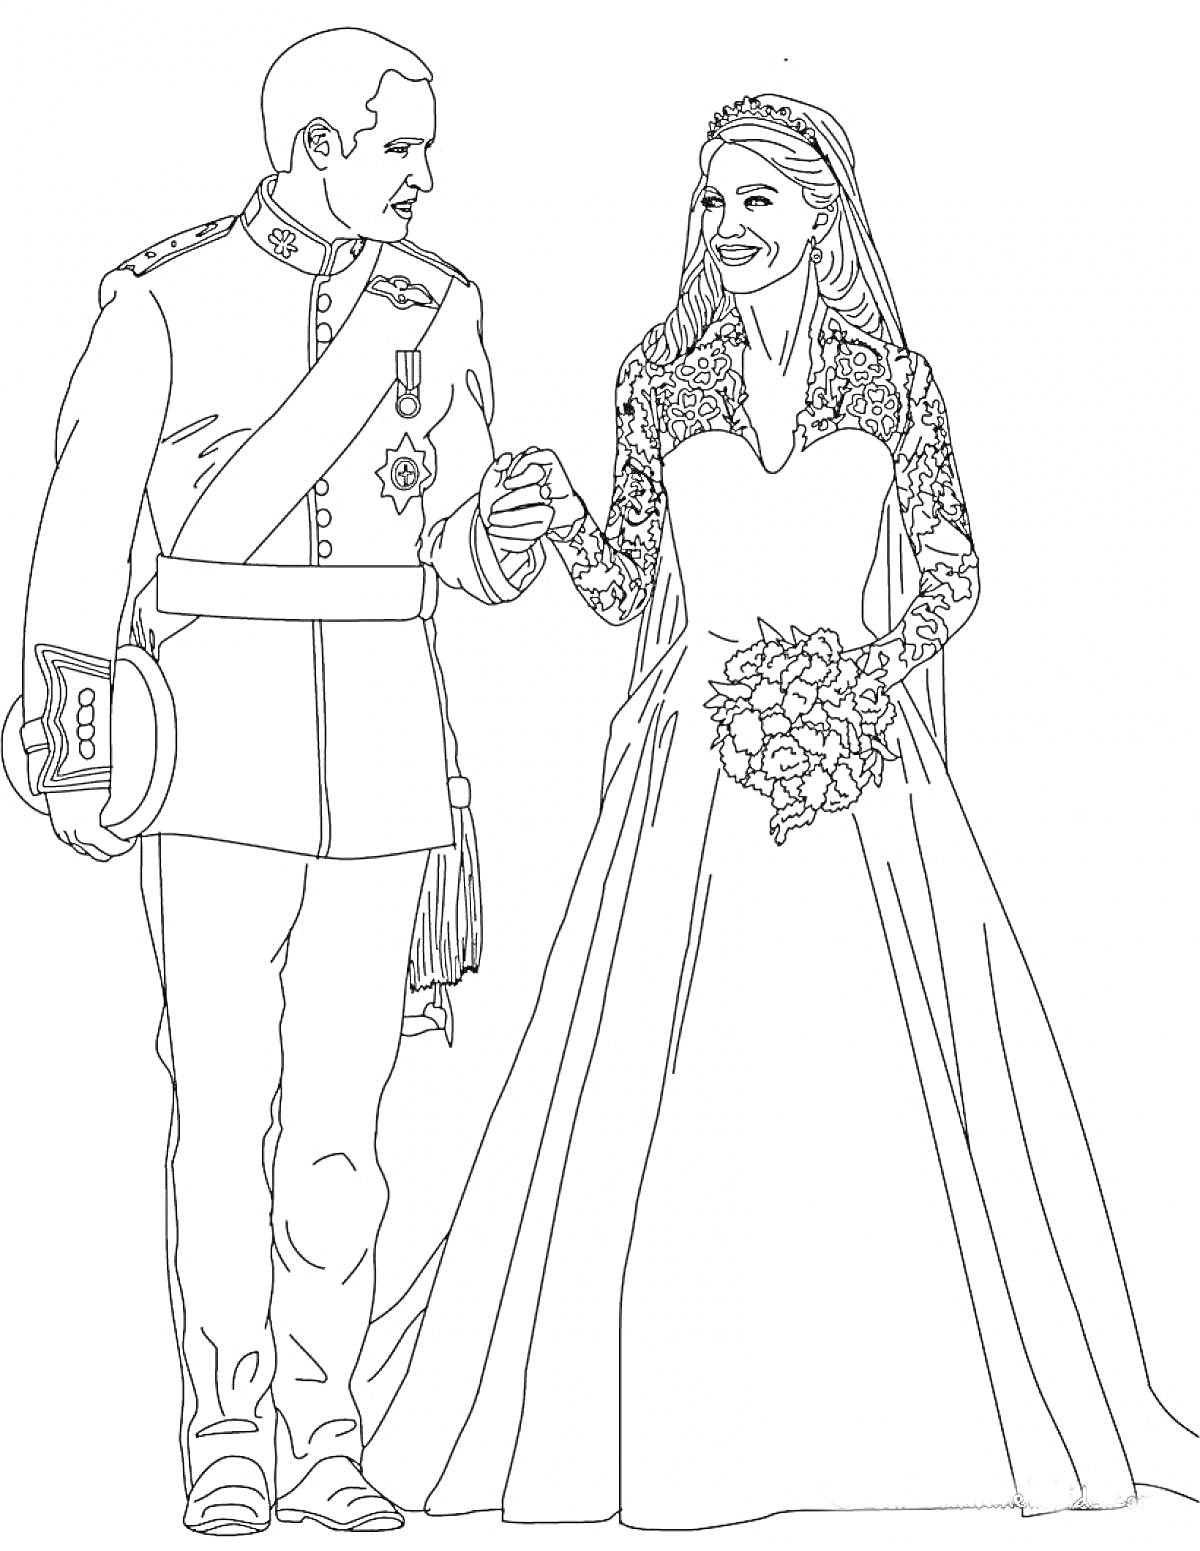 Молодожены в свадебных нарядах, невеста в кружевном платье с букетом, жених в форме